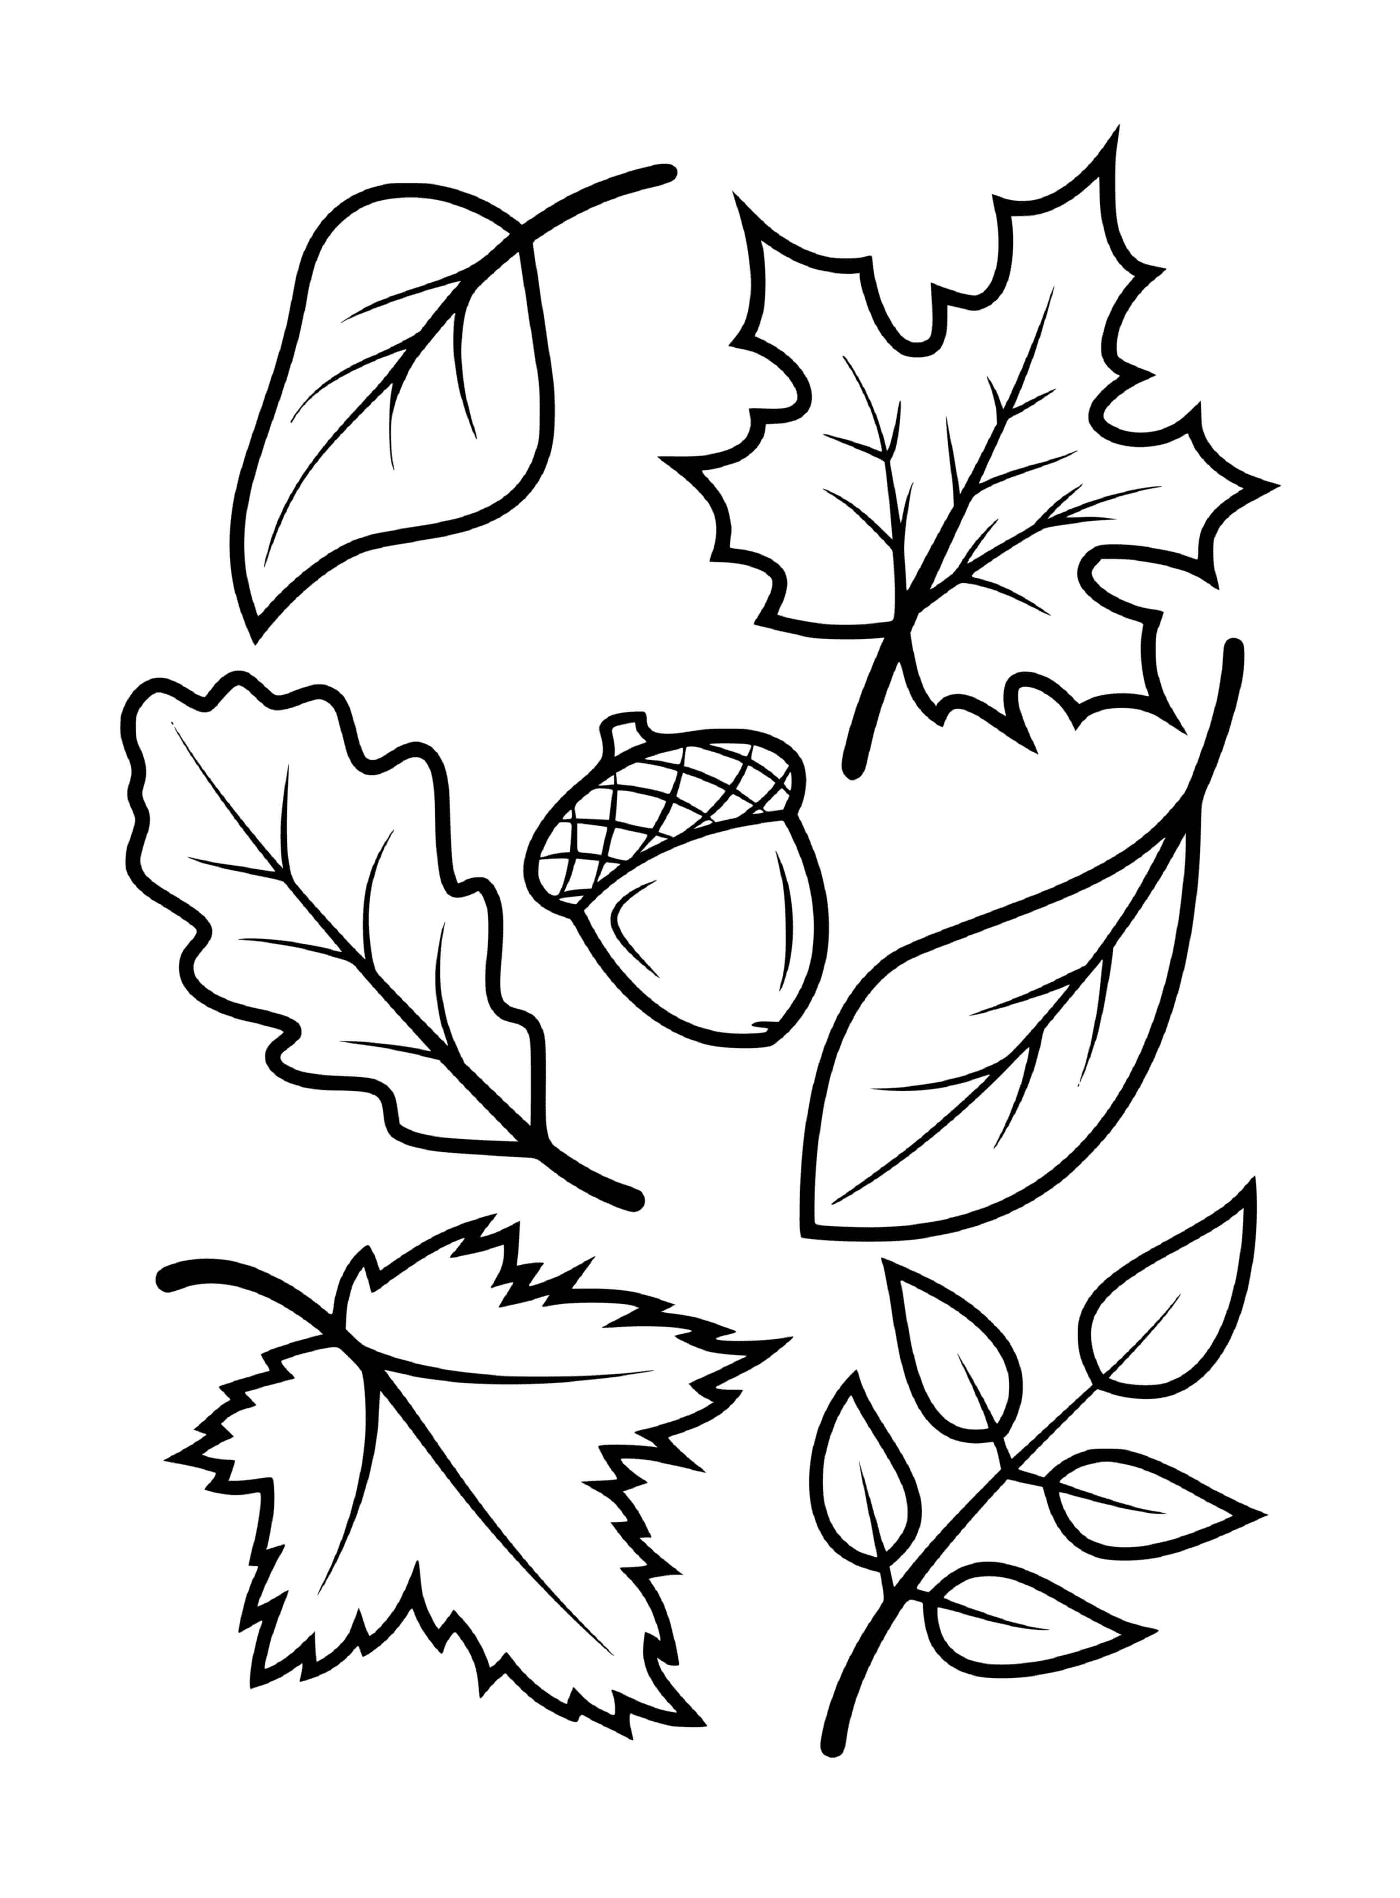  Foglie e ghiande di alberi autunnali (ad esempio acero, faggio, quercia) 